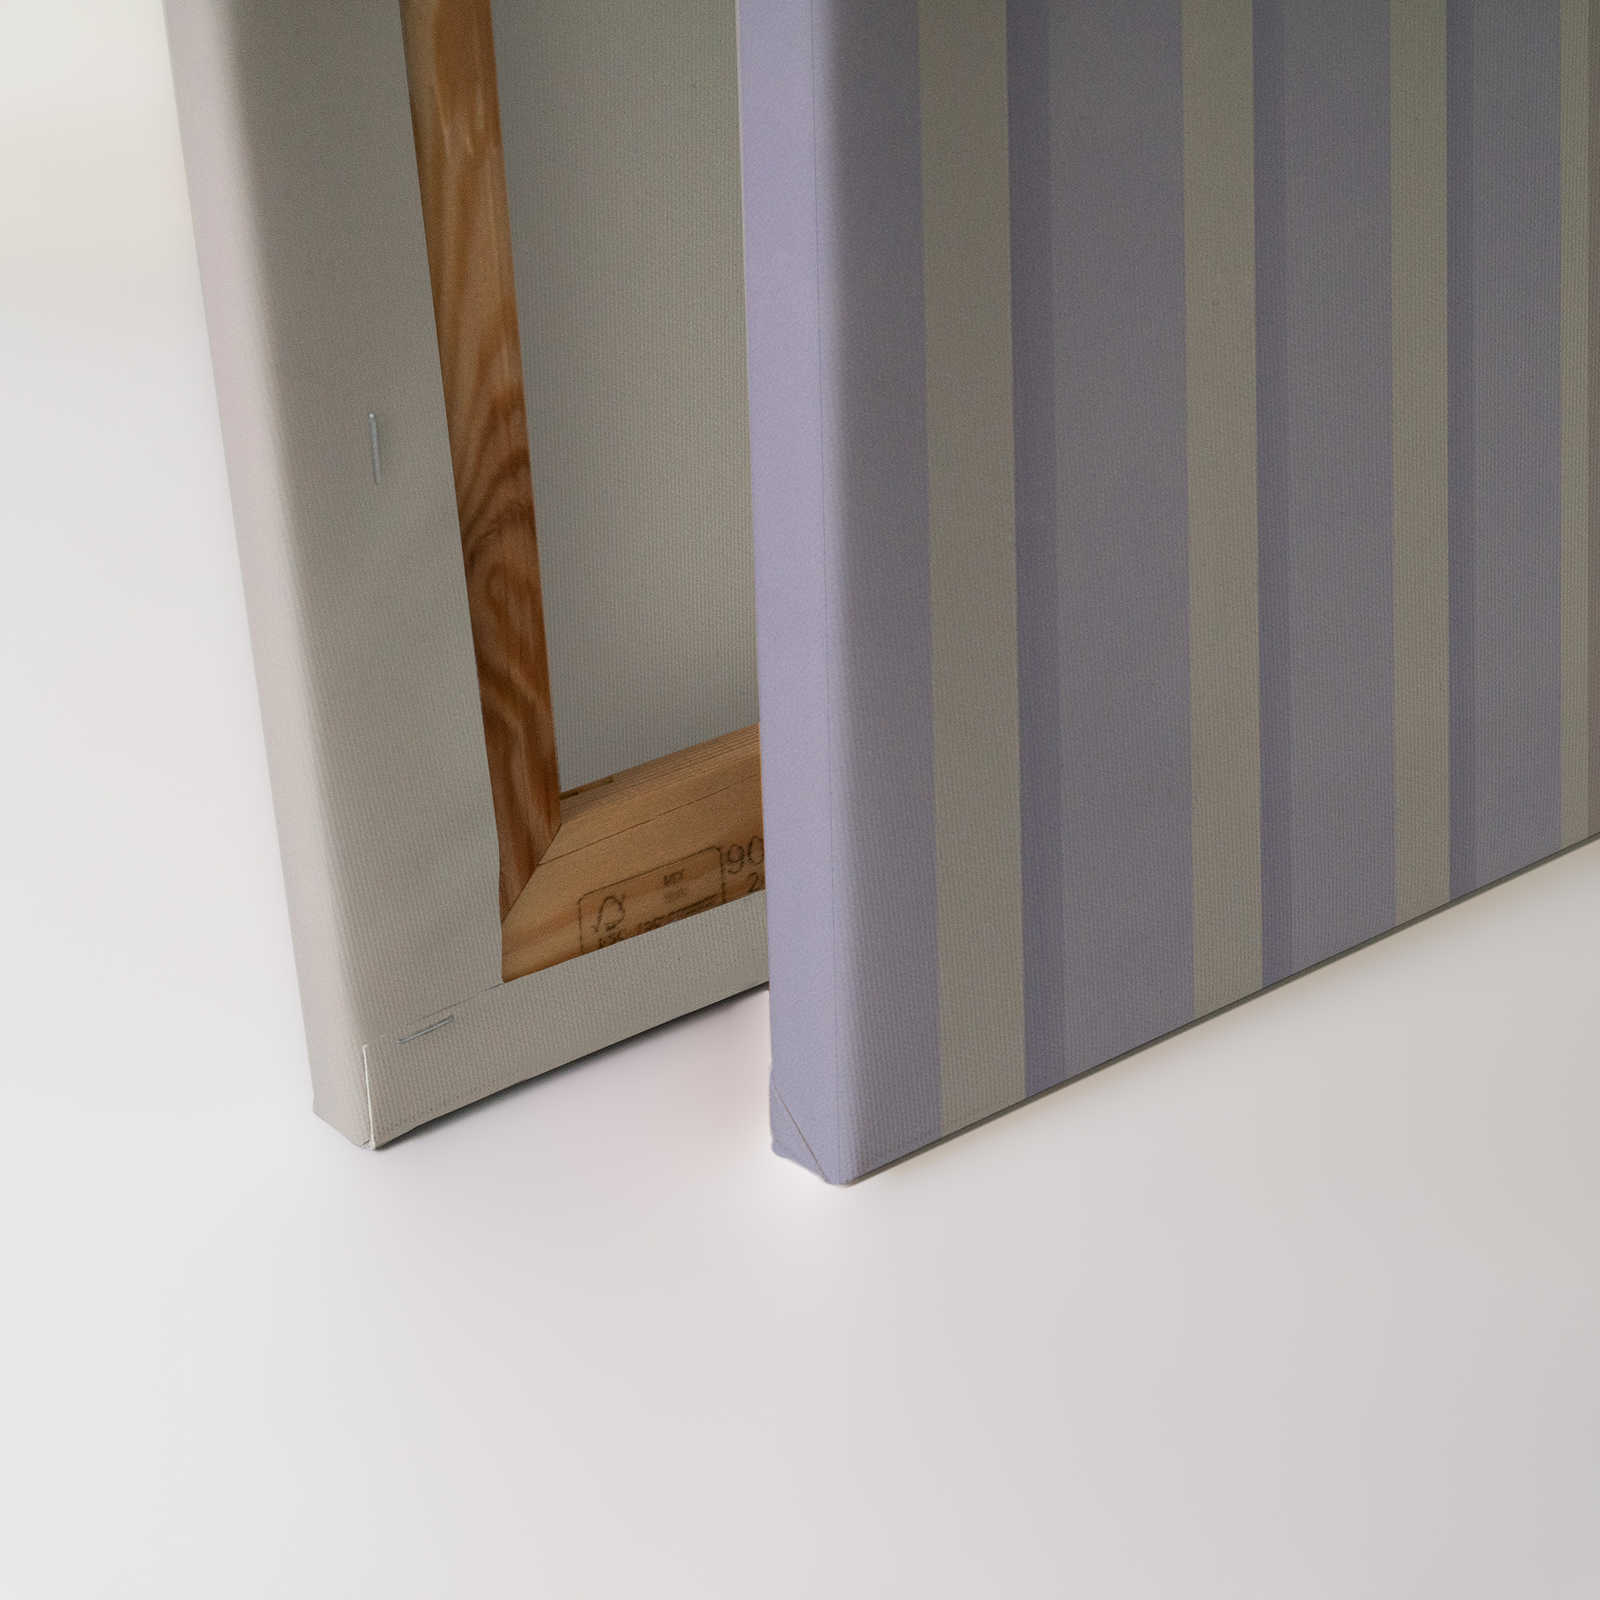             Illusion Room 1 - Toile 3D rayée lilas et grise - 1,20 m x 0,80 m
        